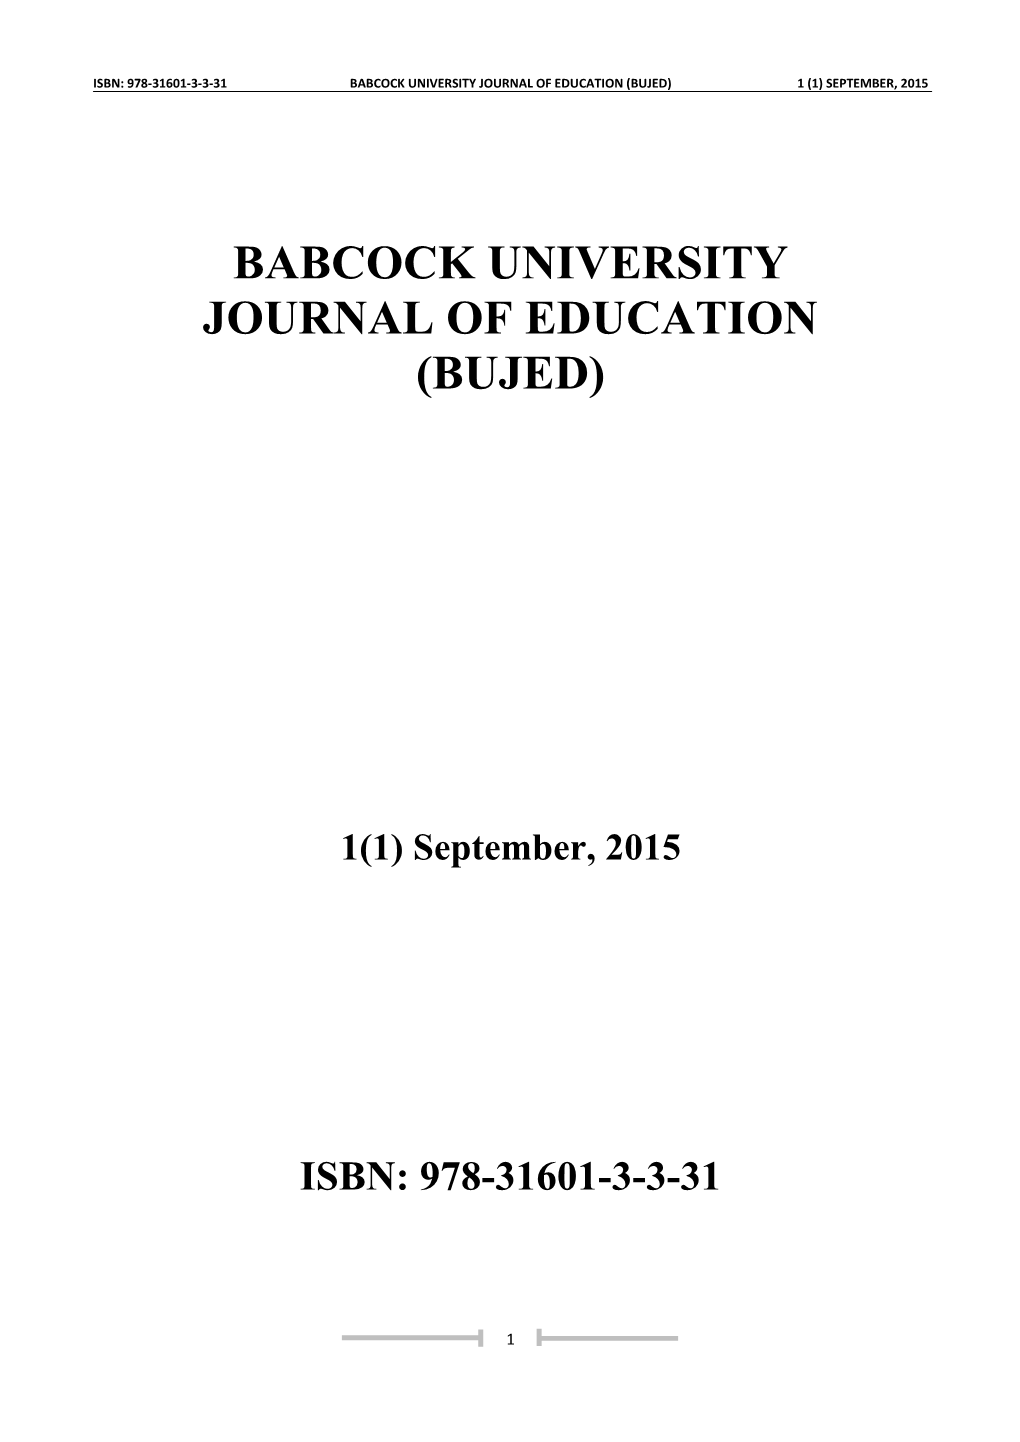 Babcock University Journal of Education (Bujed) 1 (1) September, 2015